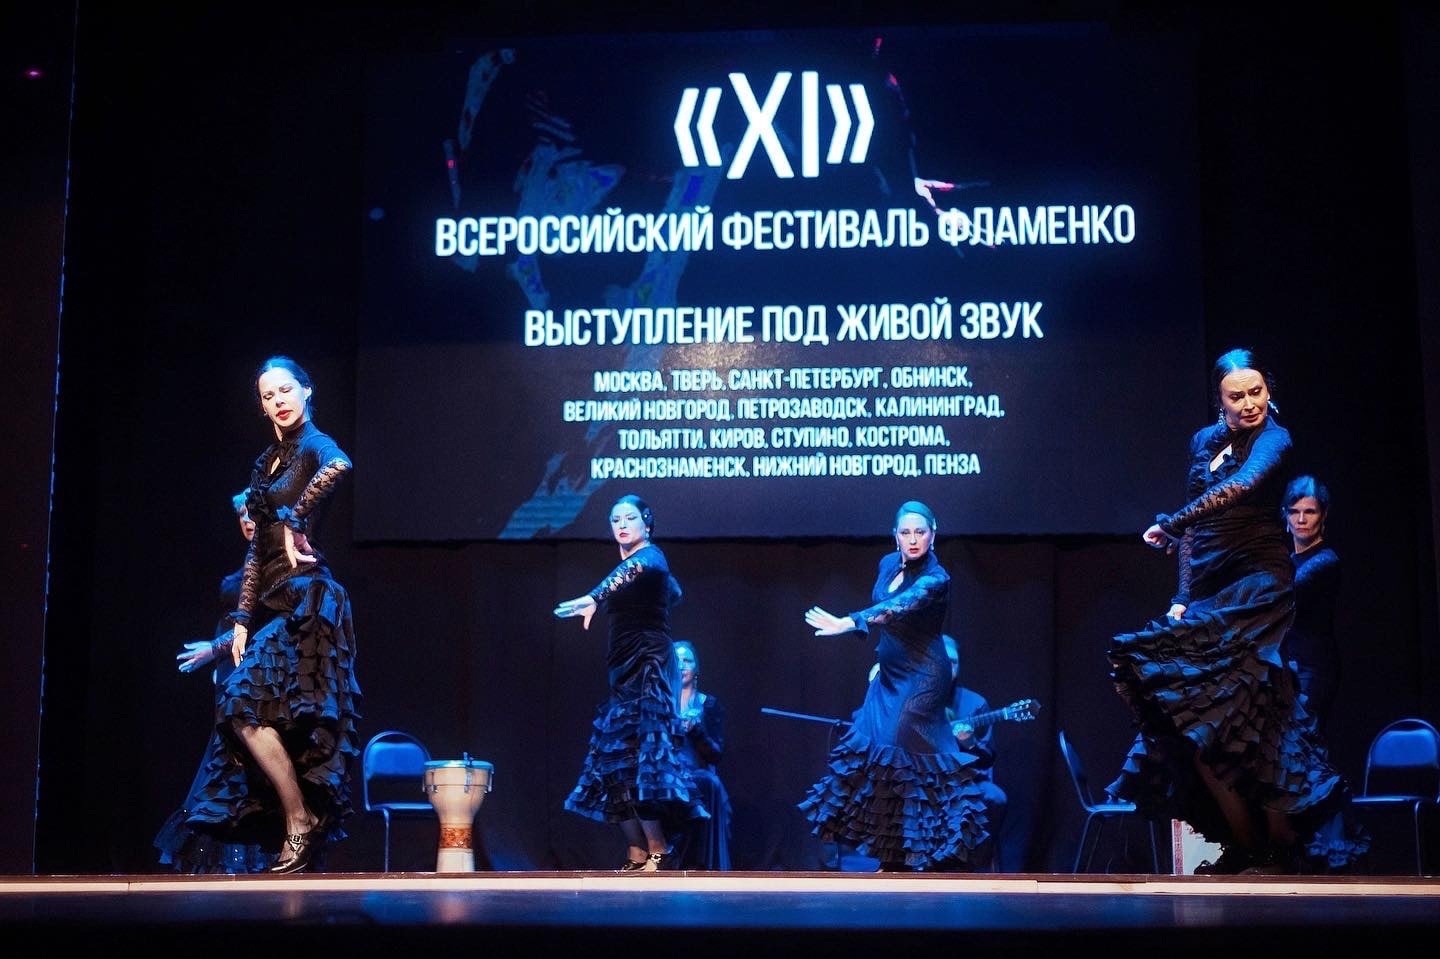 В Твери прошел всероссийский фестиваль фламенко